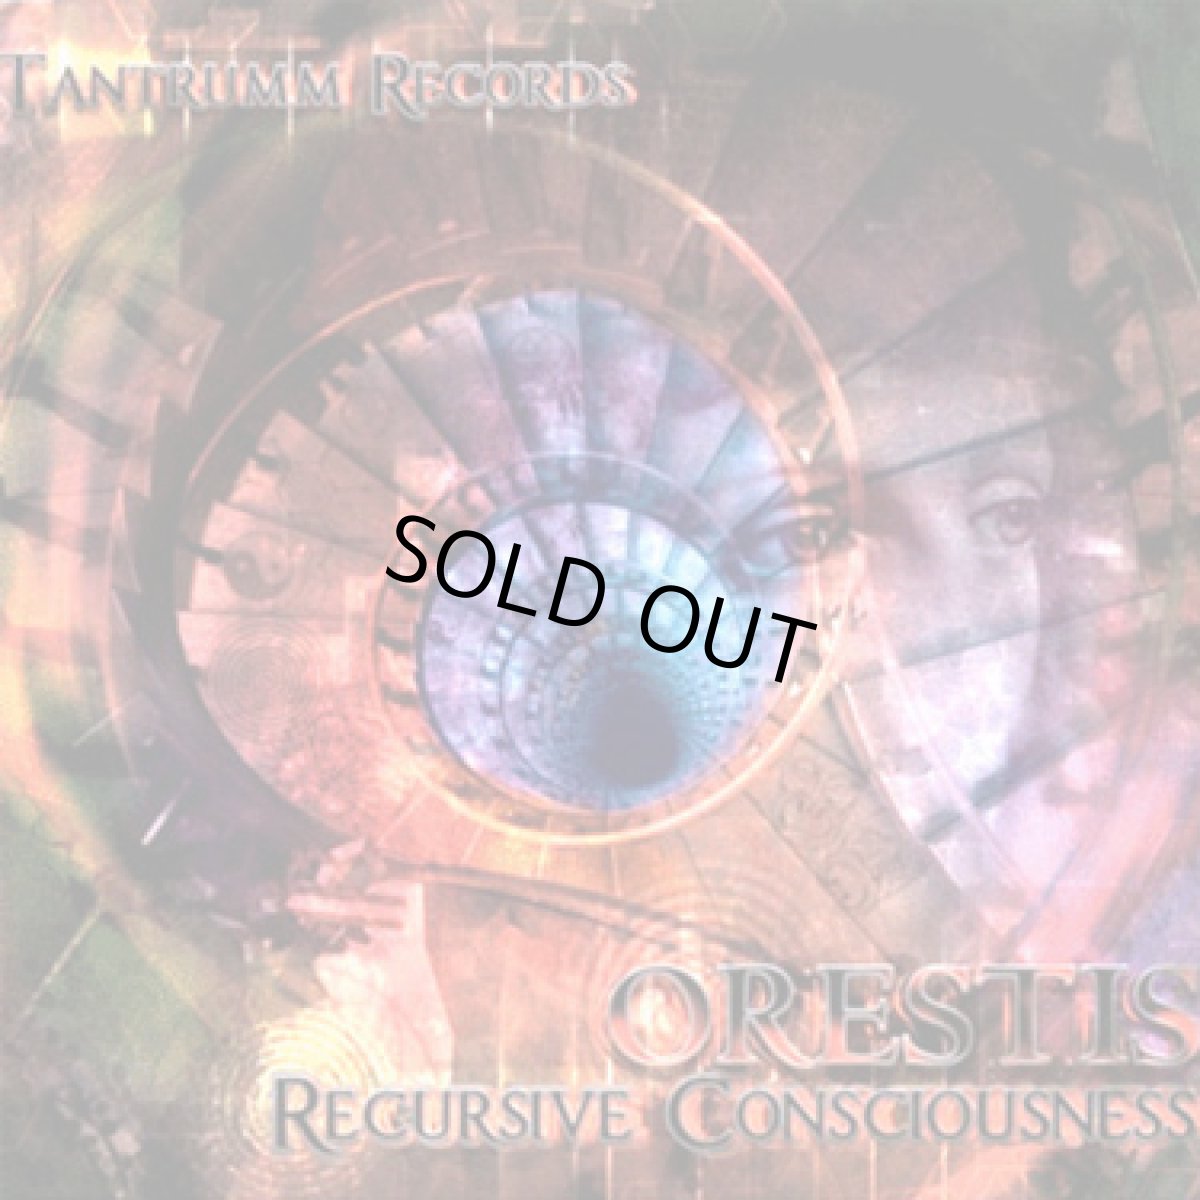 画像1: CD「Orestis / Recursive Consciousness」 (1)